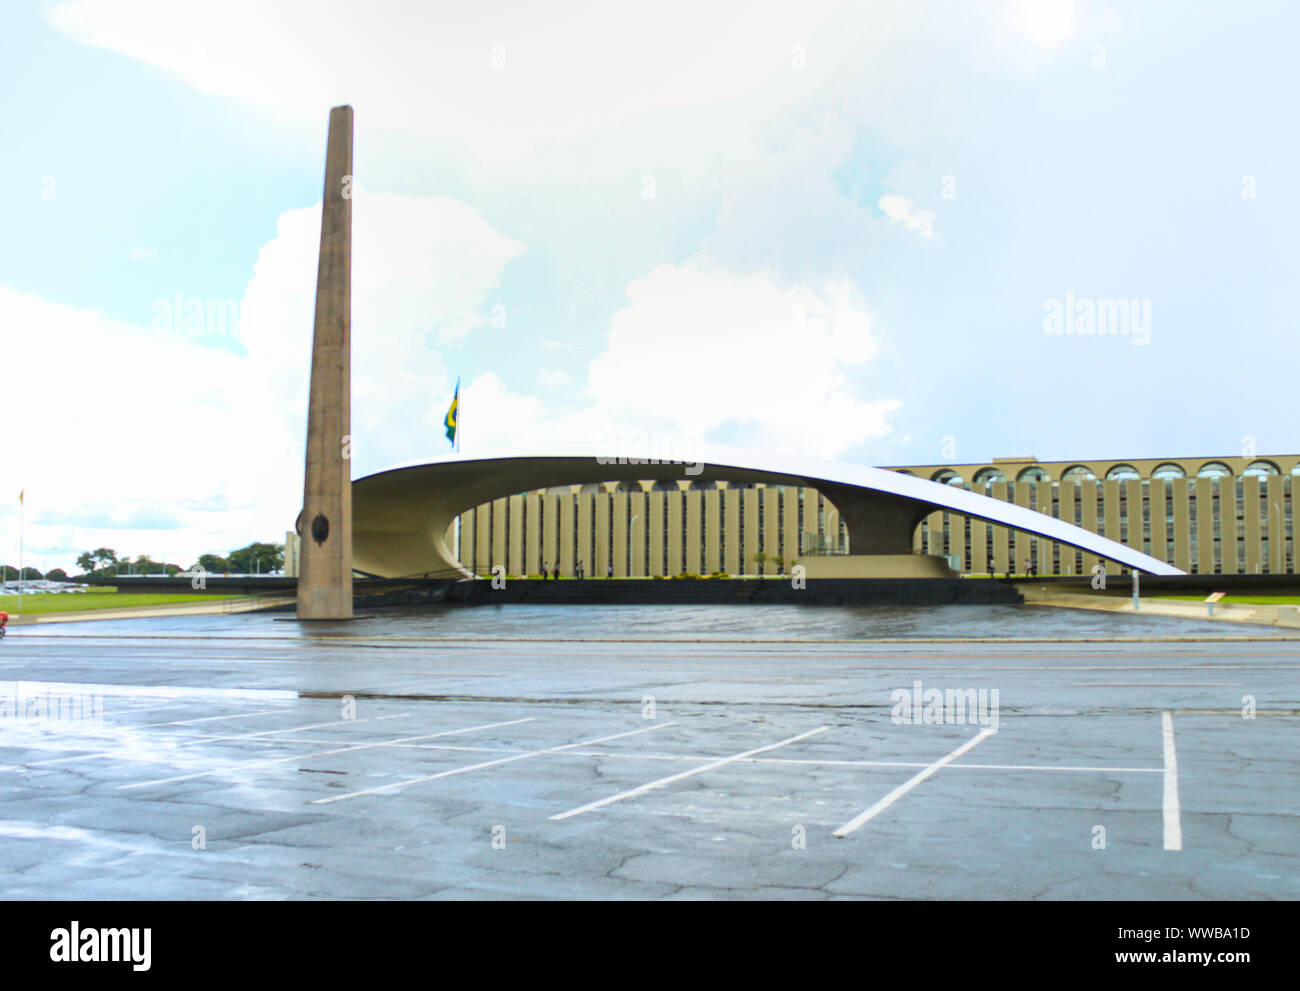 Fotografia della conchiglia acustica monumento che si trova nel Duca de caxias square nell'urbano settore militare in Brasilia. Foto Stock